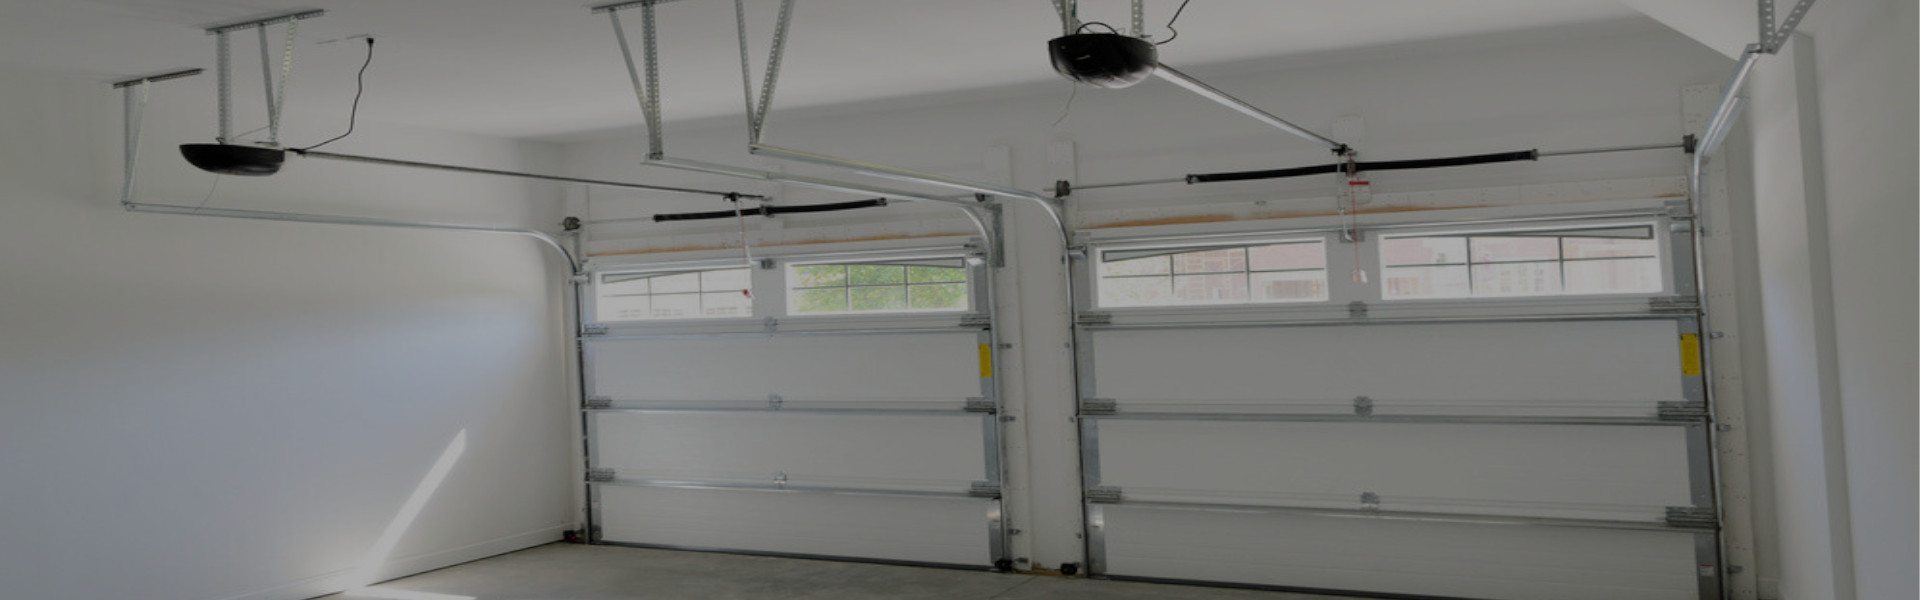 Slider Garage Door Repair, Glaziers in Hayes, Shortlands, Bromley Common, BR2